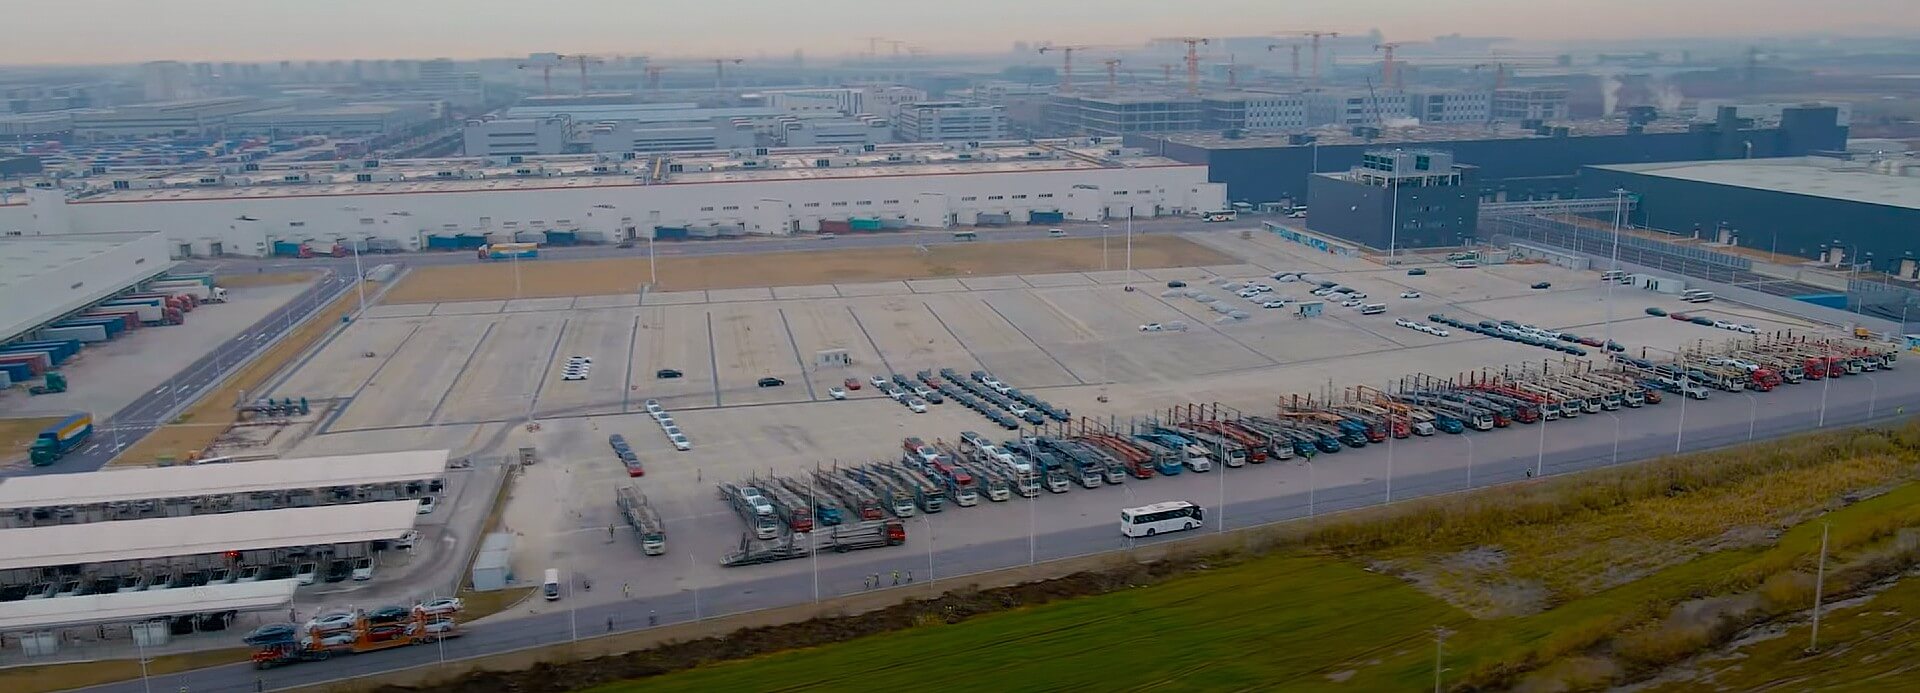 Tesla Giga Shanghai, üretim devam ederken teslimat kamyonları tarafından basıldı